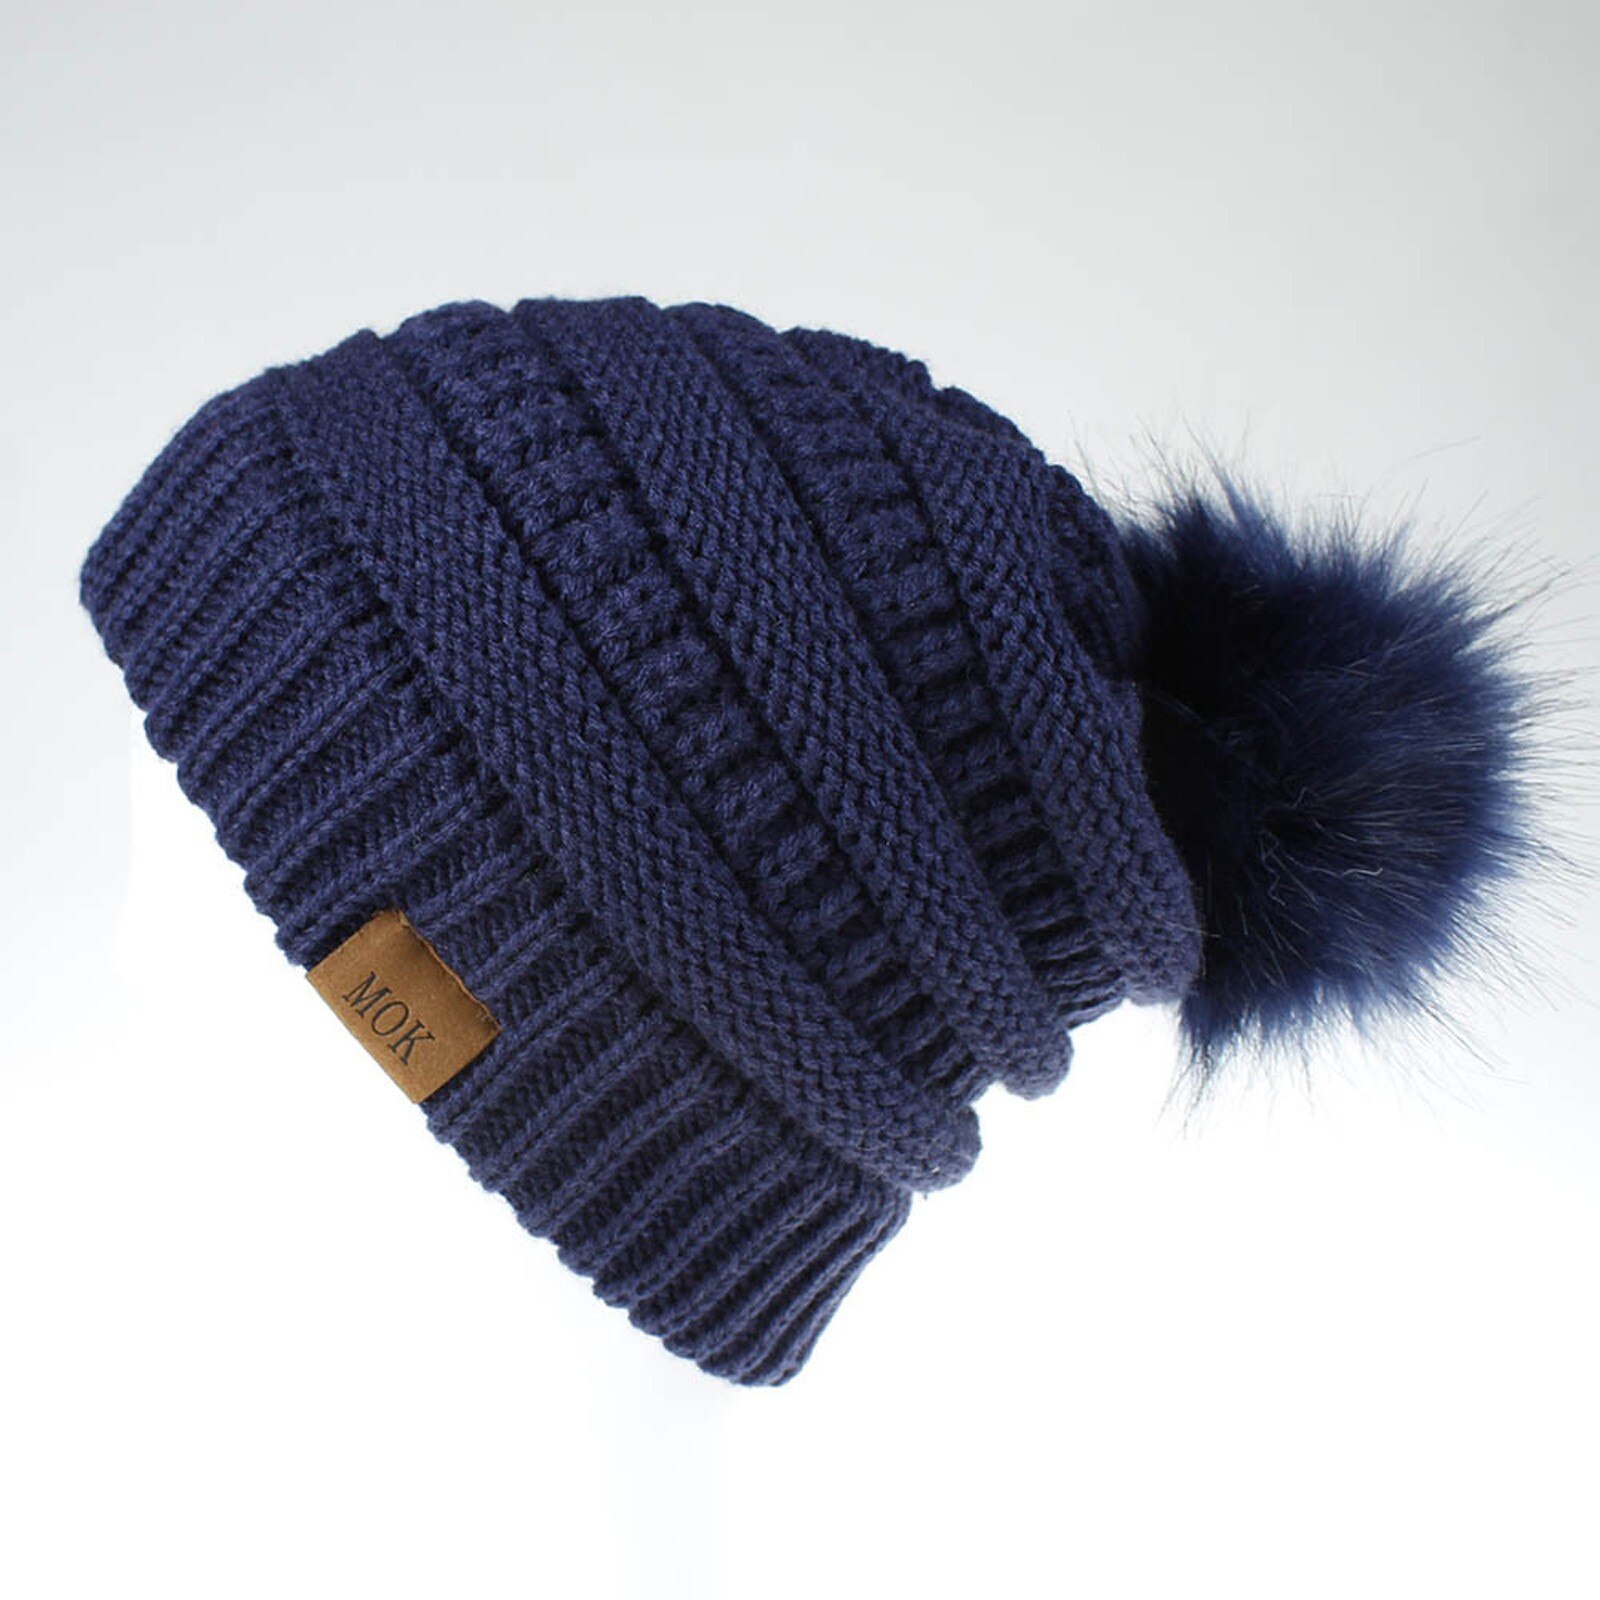 E la moda donna nuova E di alta qualità mantiene caldi cappelli invernali cappello a orlo in lana lavorato a maglia morbido delicato sulla pelle, traspirante: NY